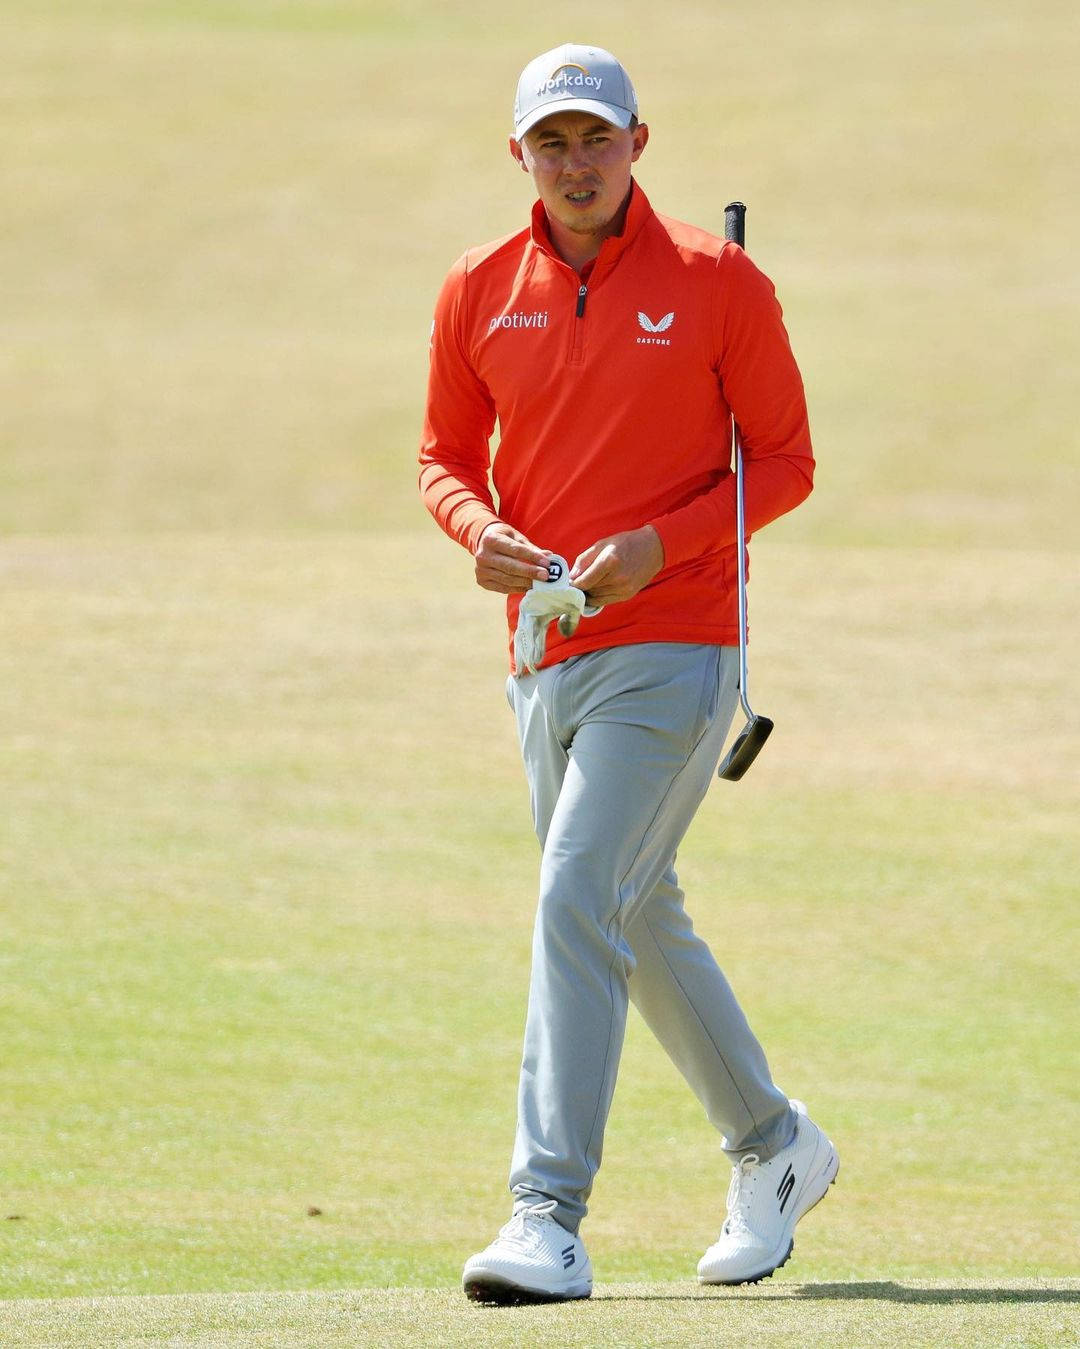 Mattfitzpatrick Trägt Orangefarbene Golfausrüstung. Wallpaper